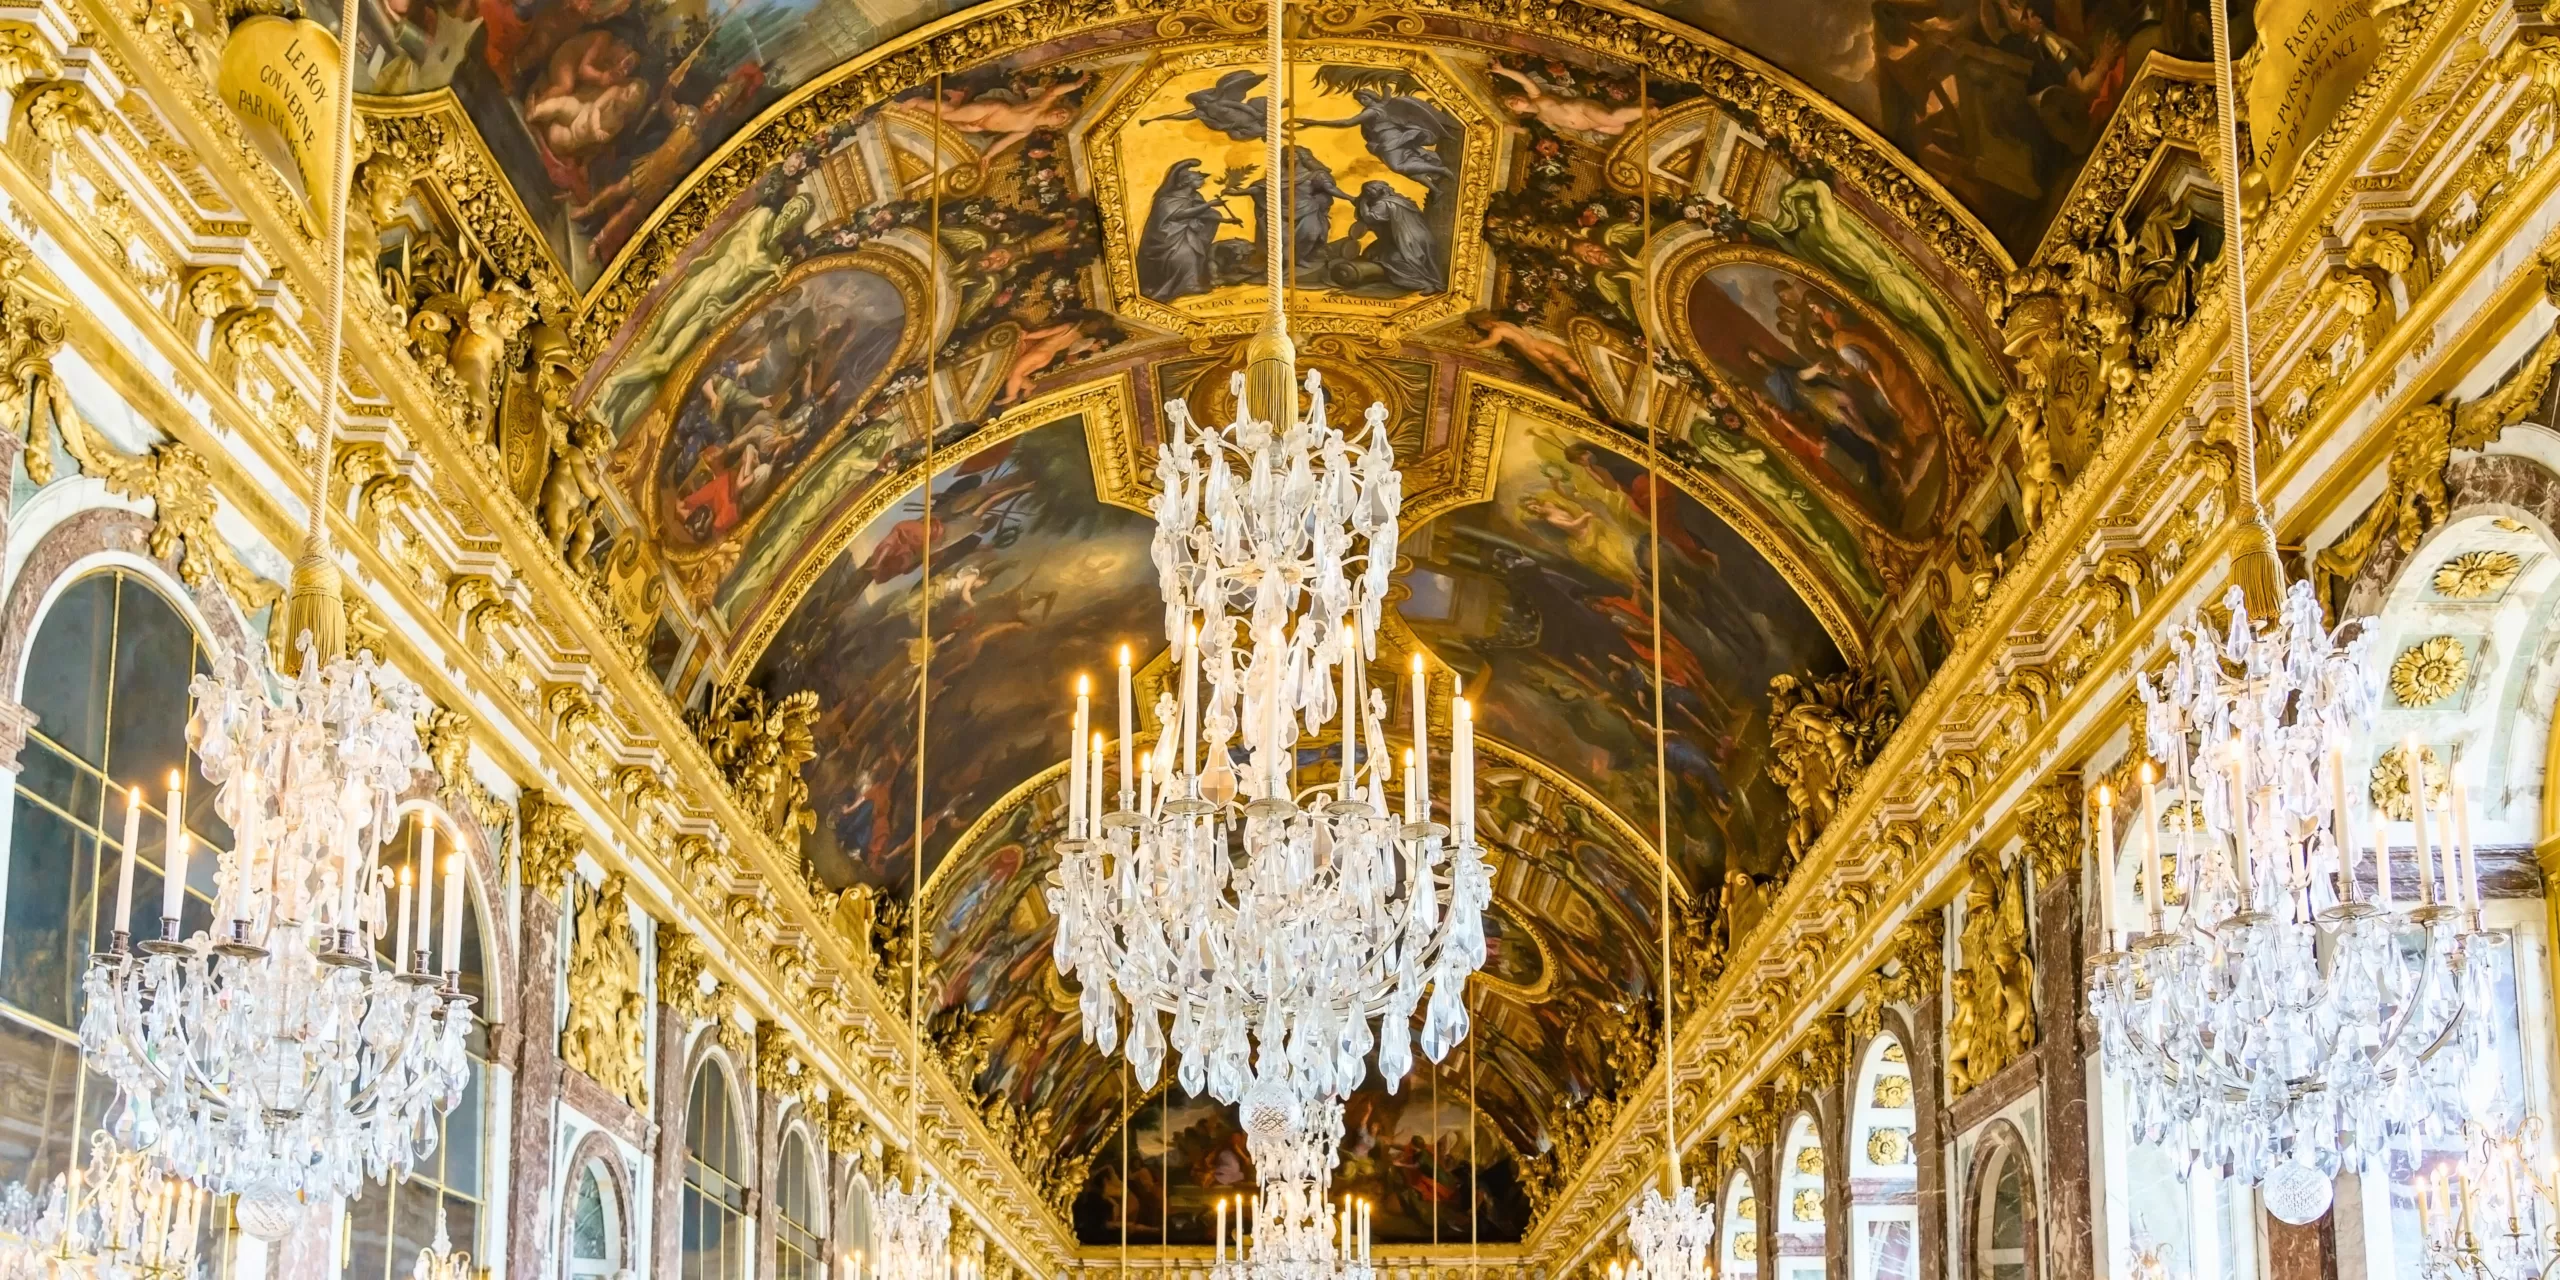 L'intérieur du château de Versailles, à voir lors de votre découverte de ce site incontournable